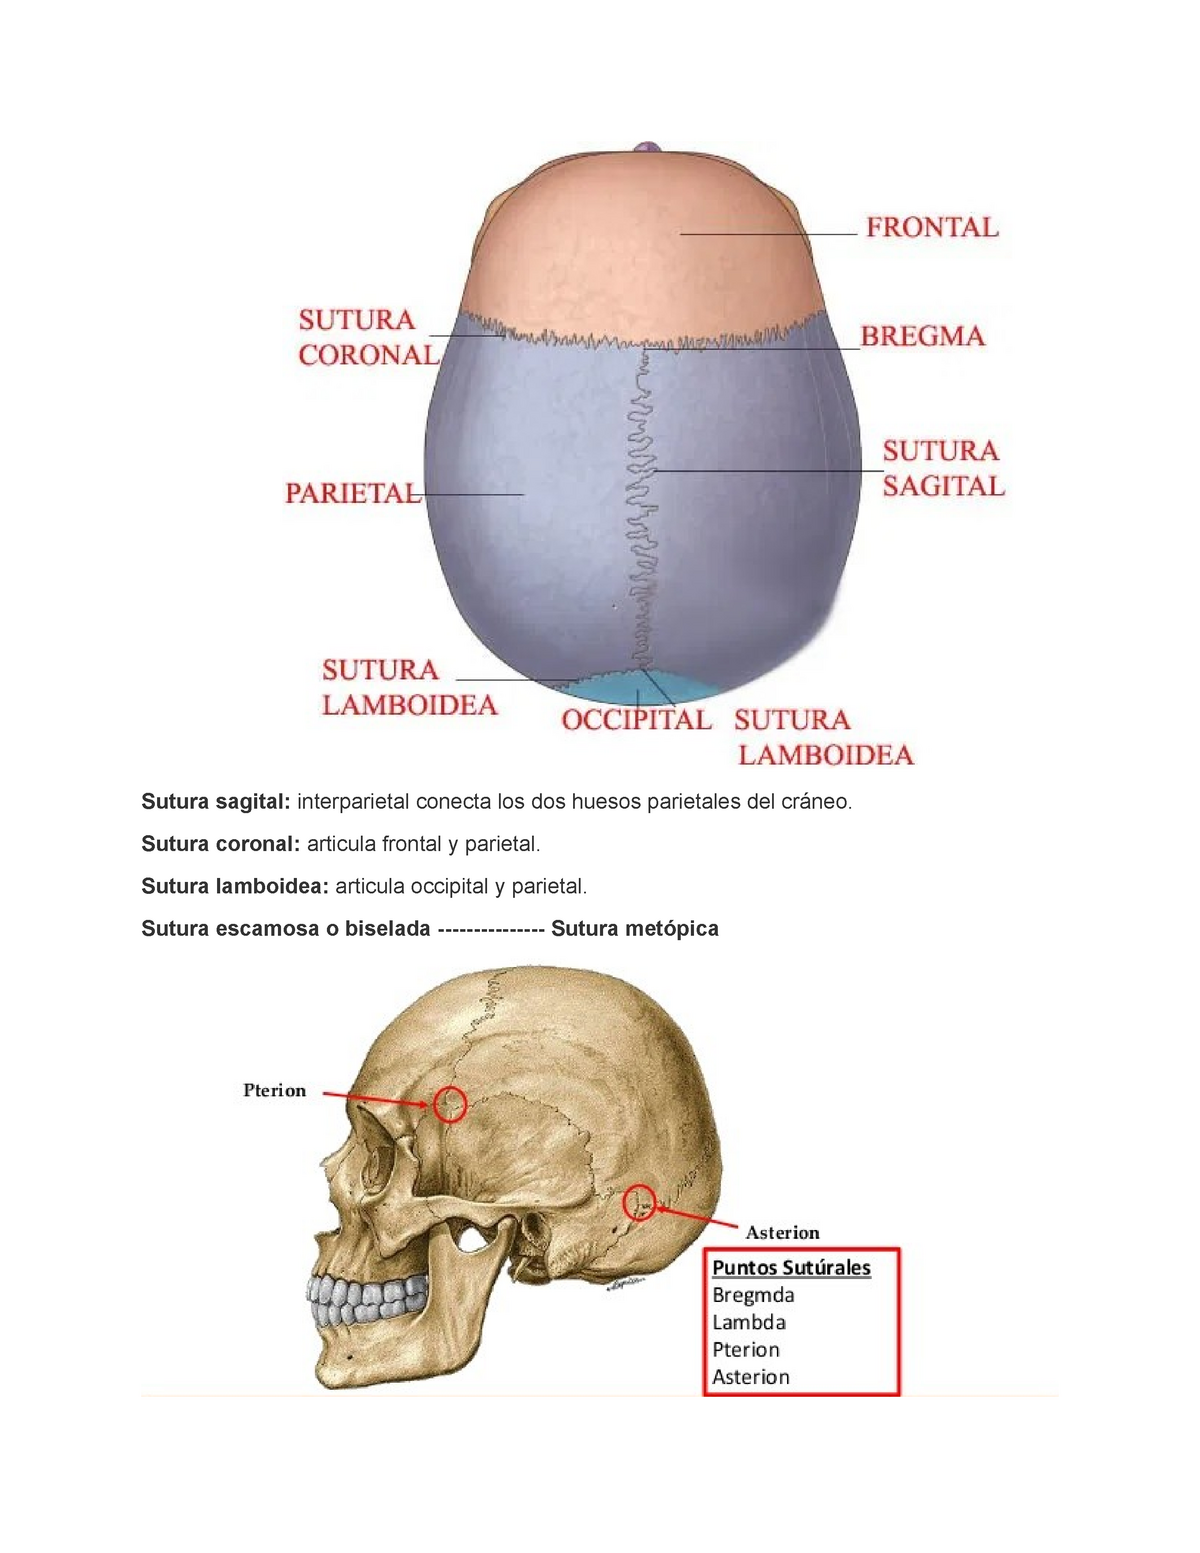 Sutura Sagital Sutura Coronal Articula Frontal Y Parietal Sutura